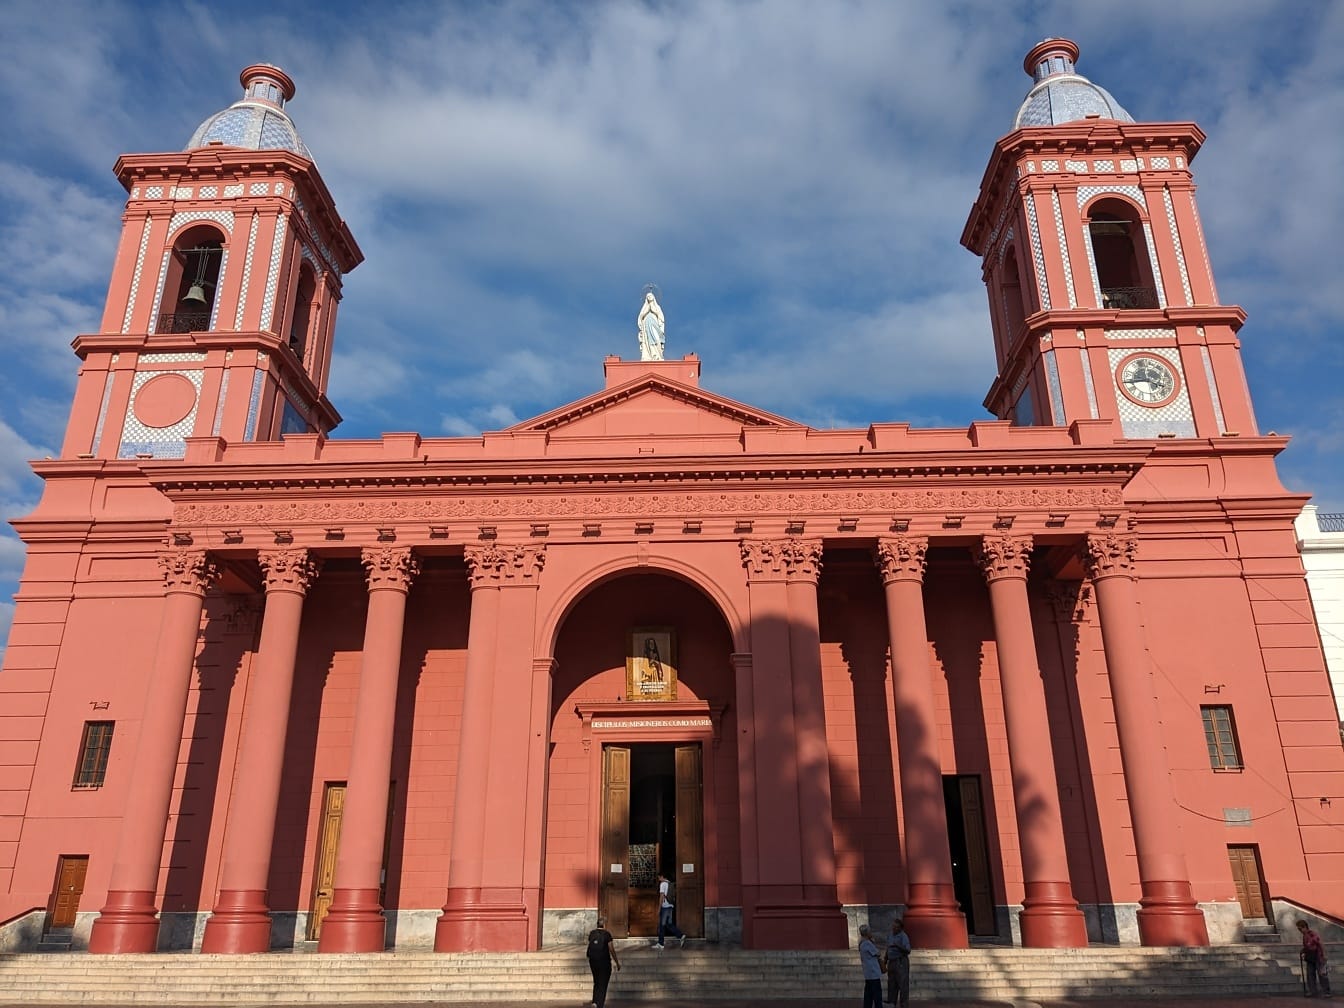 De Basiliek van de kathedraal van Onze-Lieve-Vrouw van de Vallei in Catamarca in Argentinië met twee torens in koloniale bouwstijl